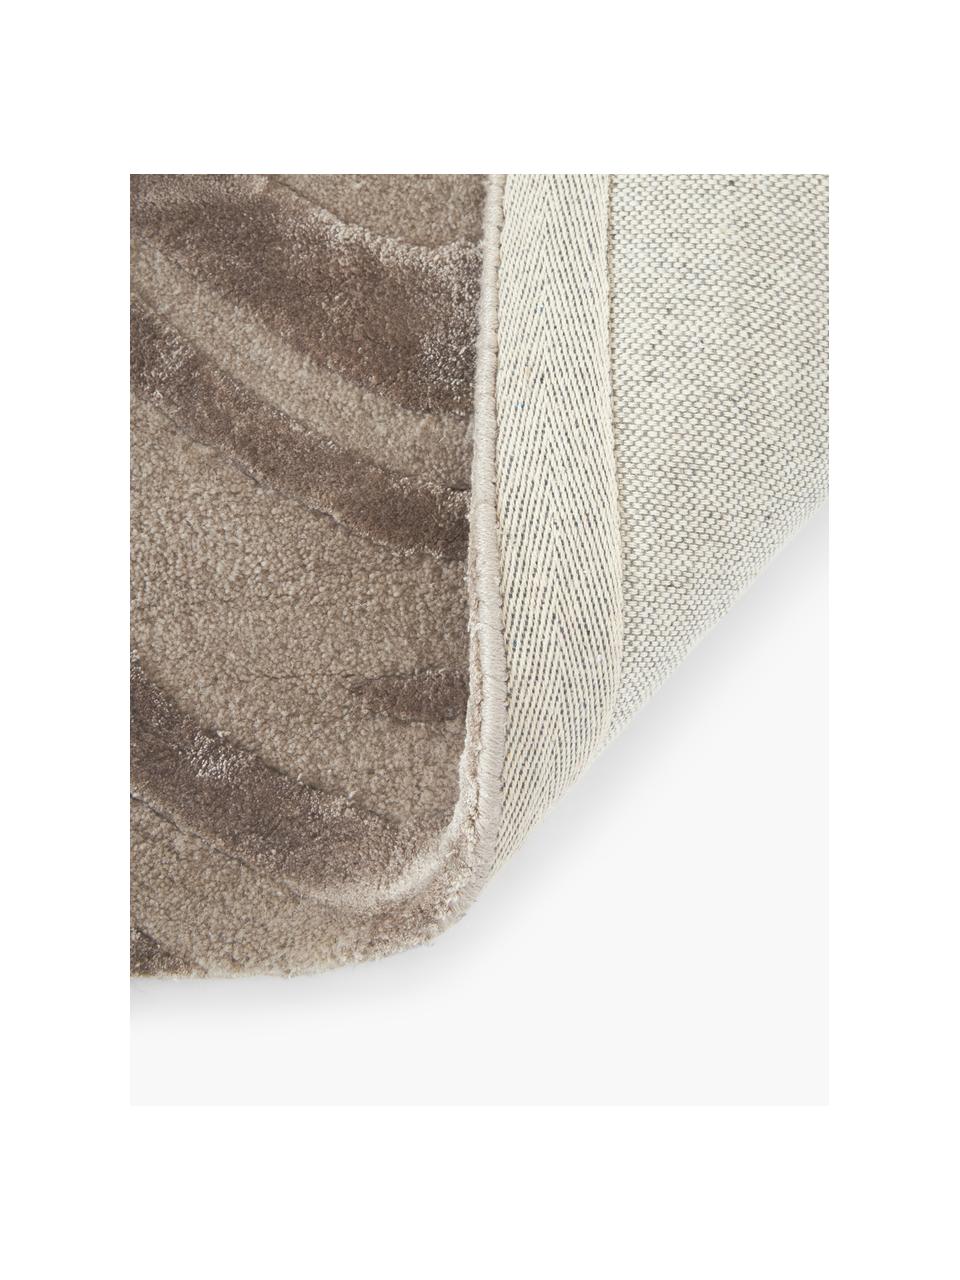 Tappeto a pelo corto taftato a mano con struttura alta-bassa color taupe Winola, Taupe, beige, Larg. 80 x Lung. 150 cm (taglia XS)